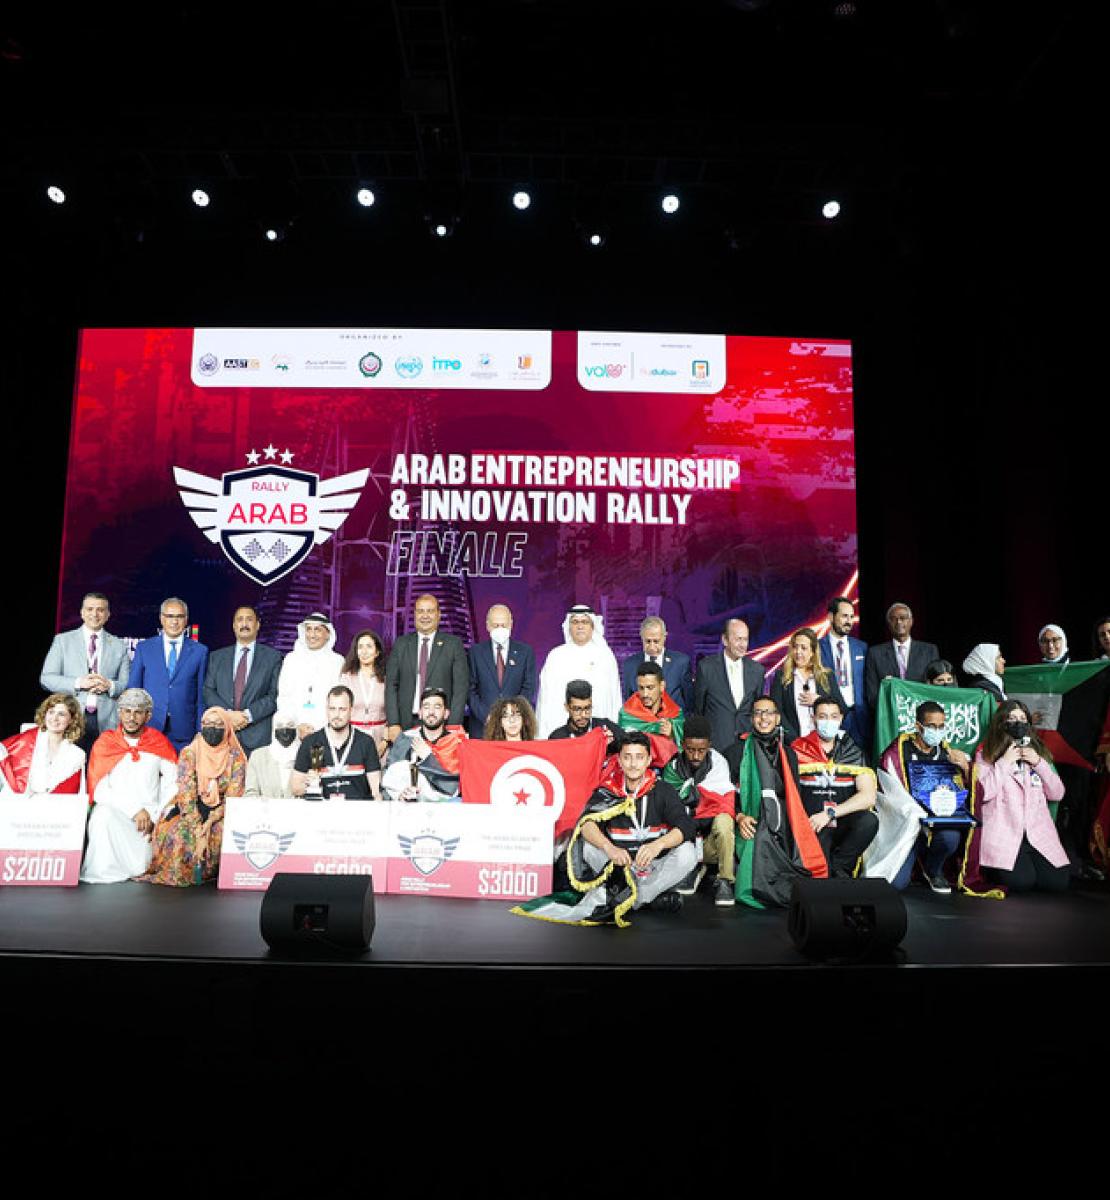 صورة جماعية تجمع بعض الشباب المشاركين في مسابقة رالي العرب لريادة الاعمال التي عقدت في دبي ضمن فعاليات إكسبو 2020.